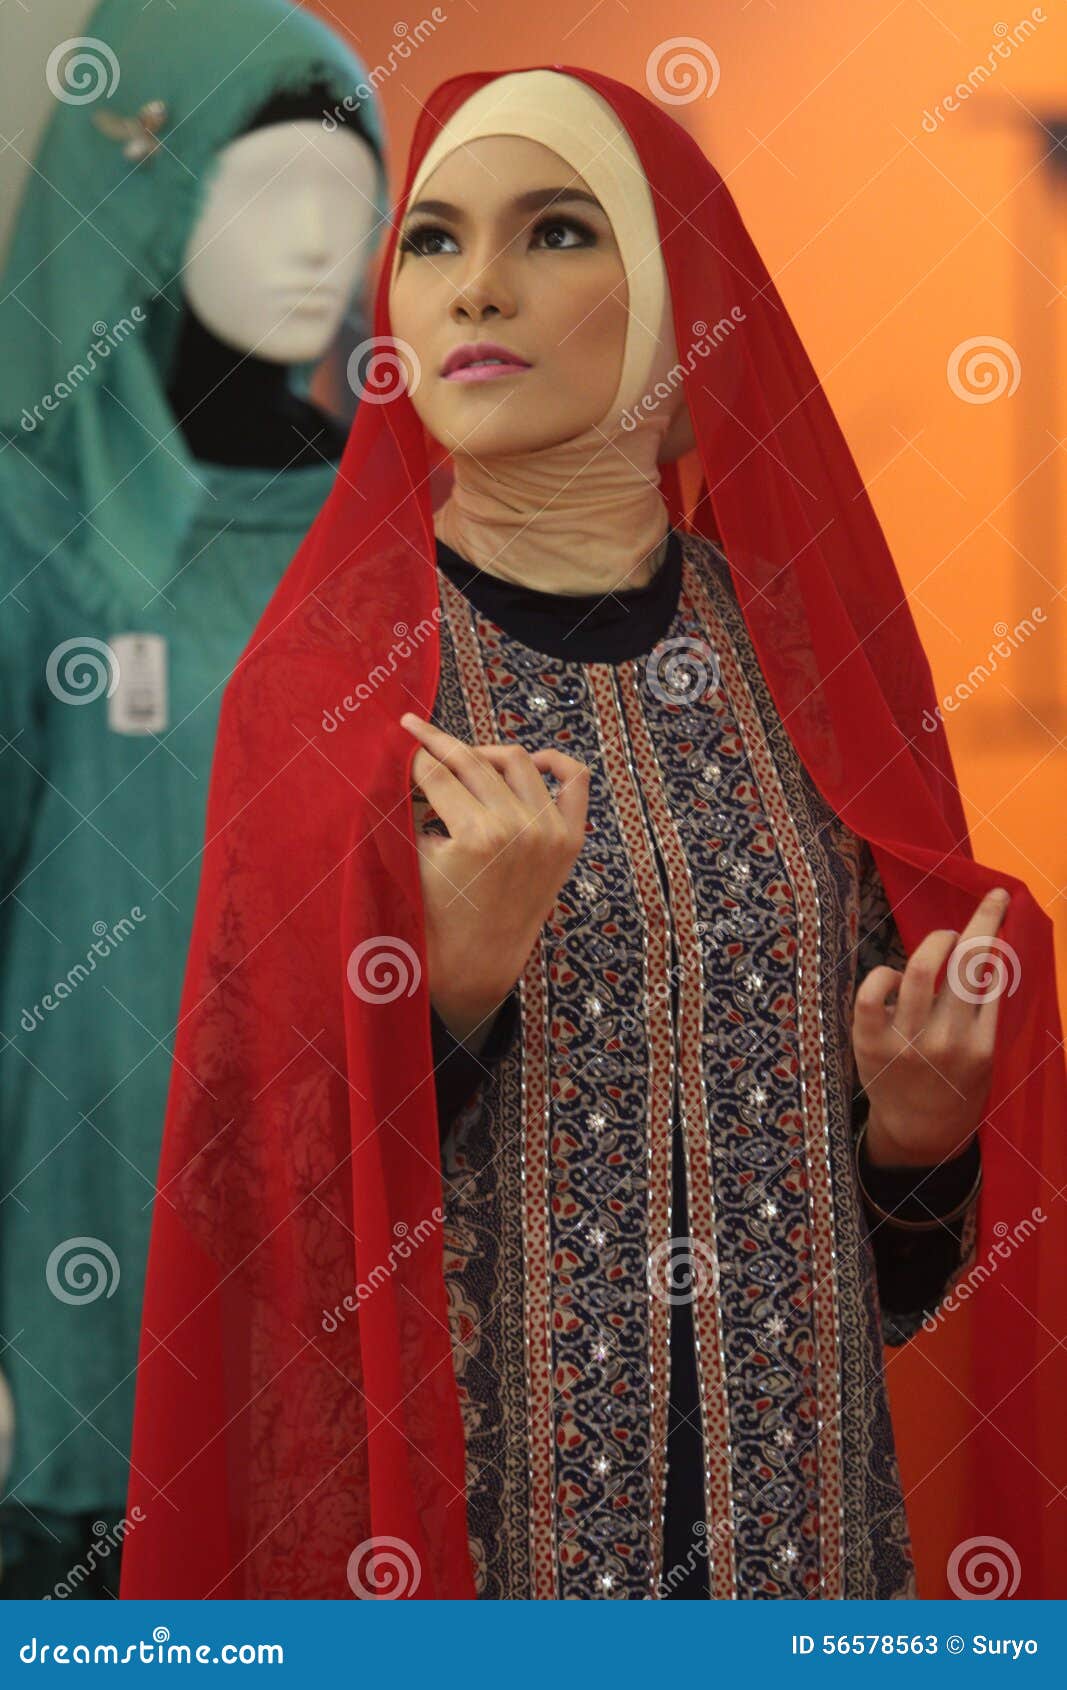 Hijab Editorial Stock Photo - Image: 56578563